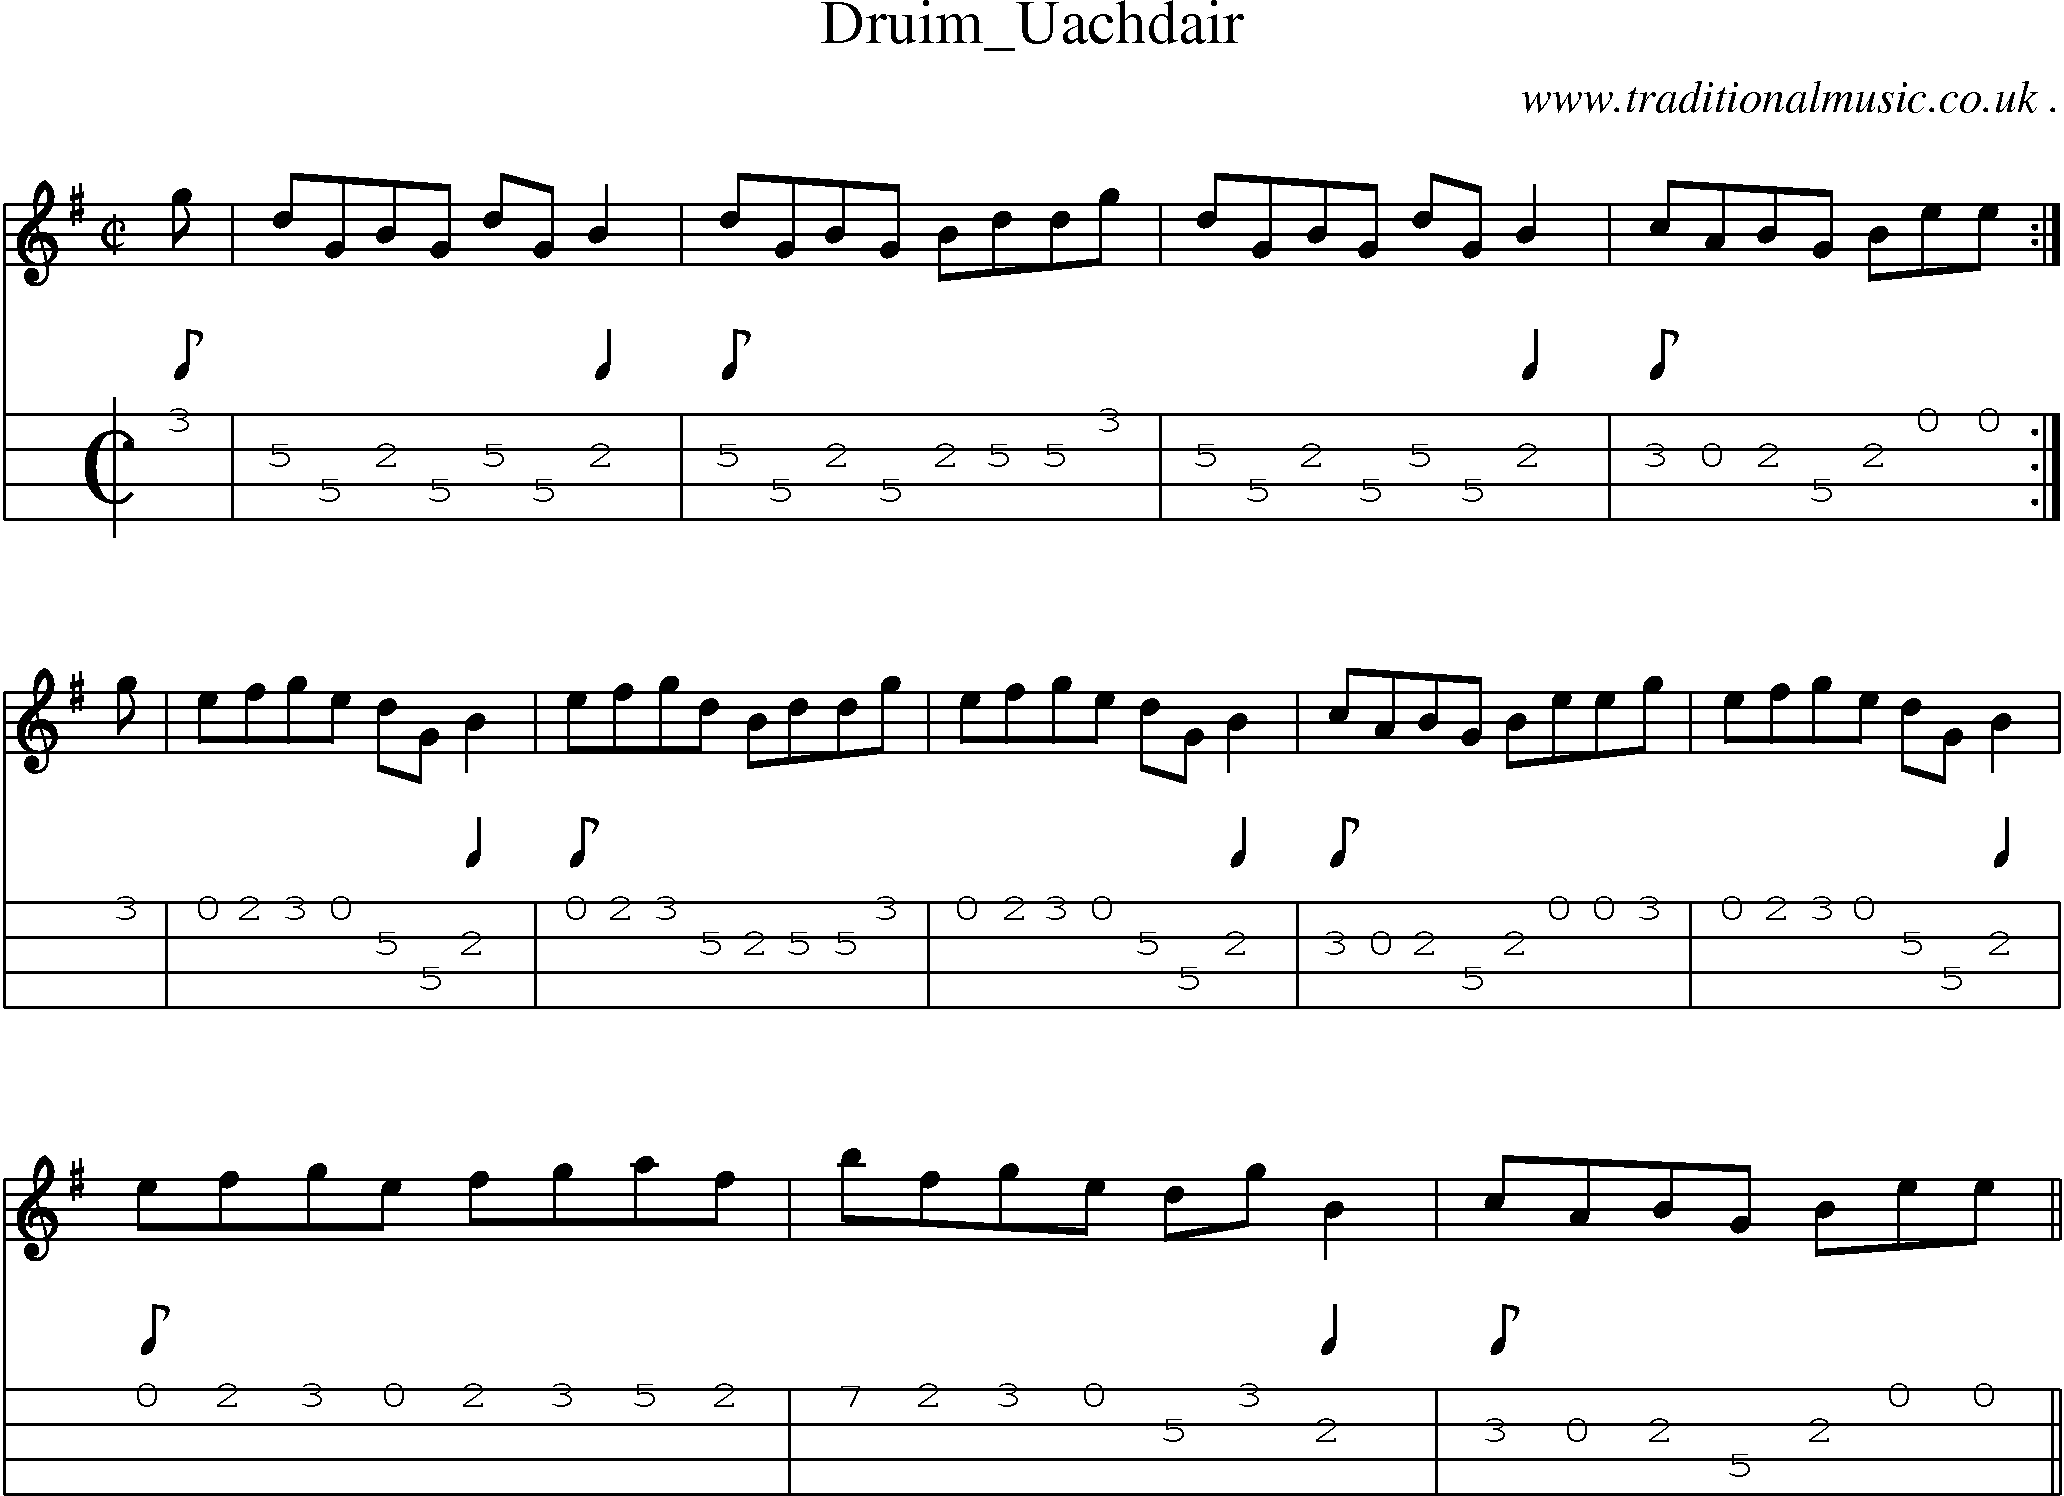 Sheet-music  score, Chords and Mandolin Tabs for Druim Uachdair